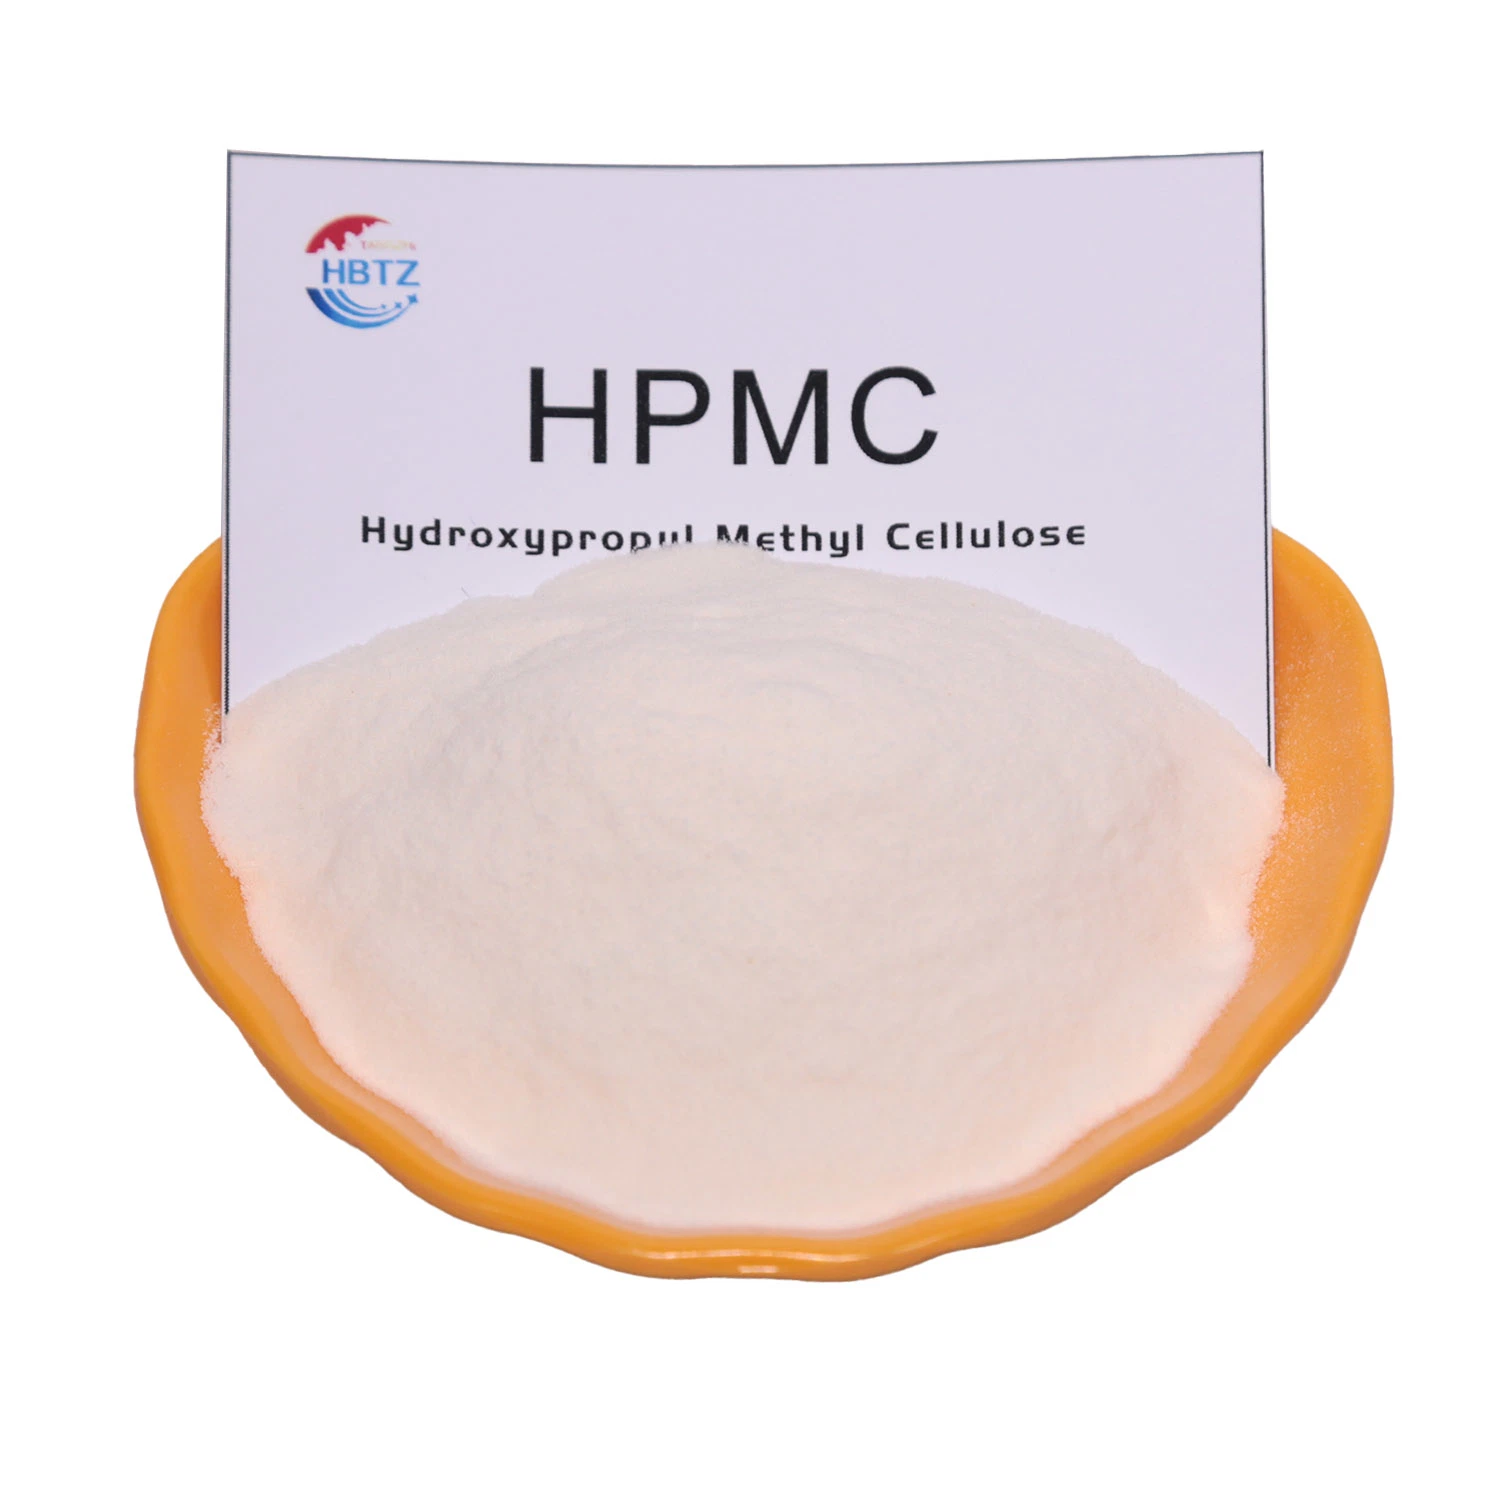 Оформление клей Hydroxypropyl метил целлюлозы HPMC для химической промышленности класса